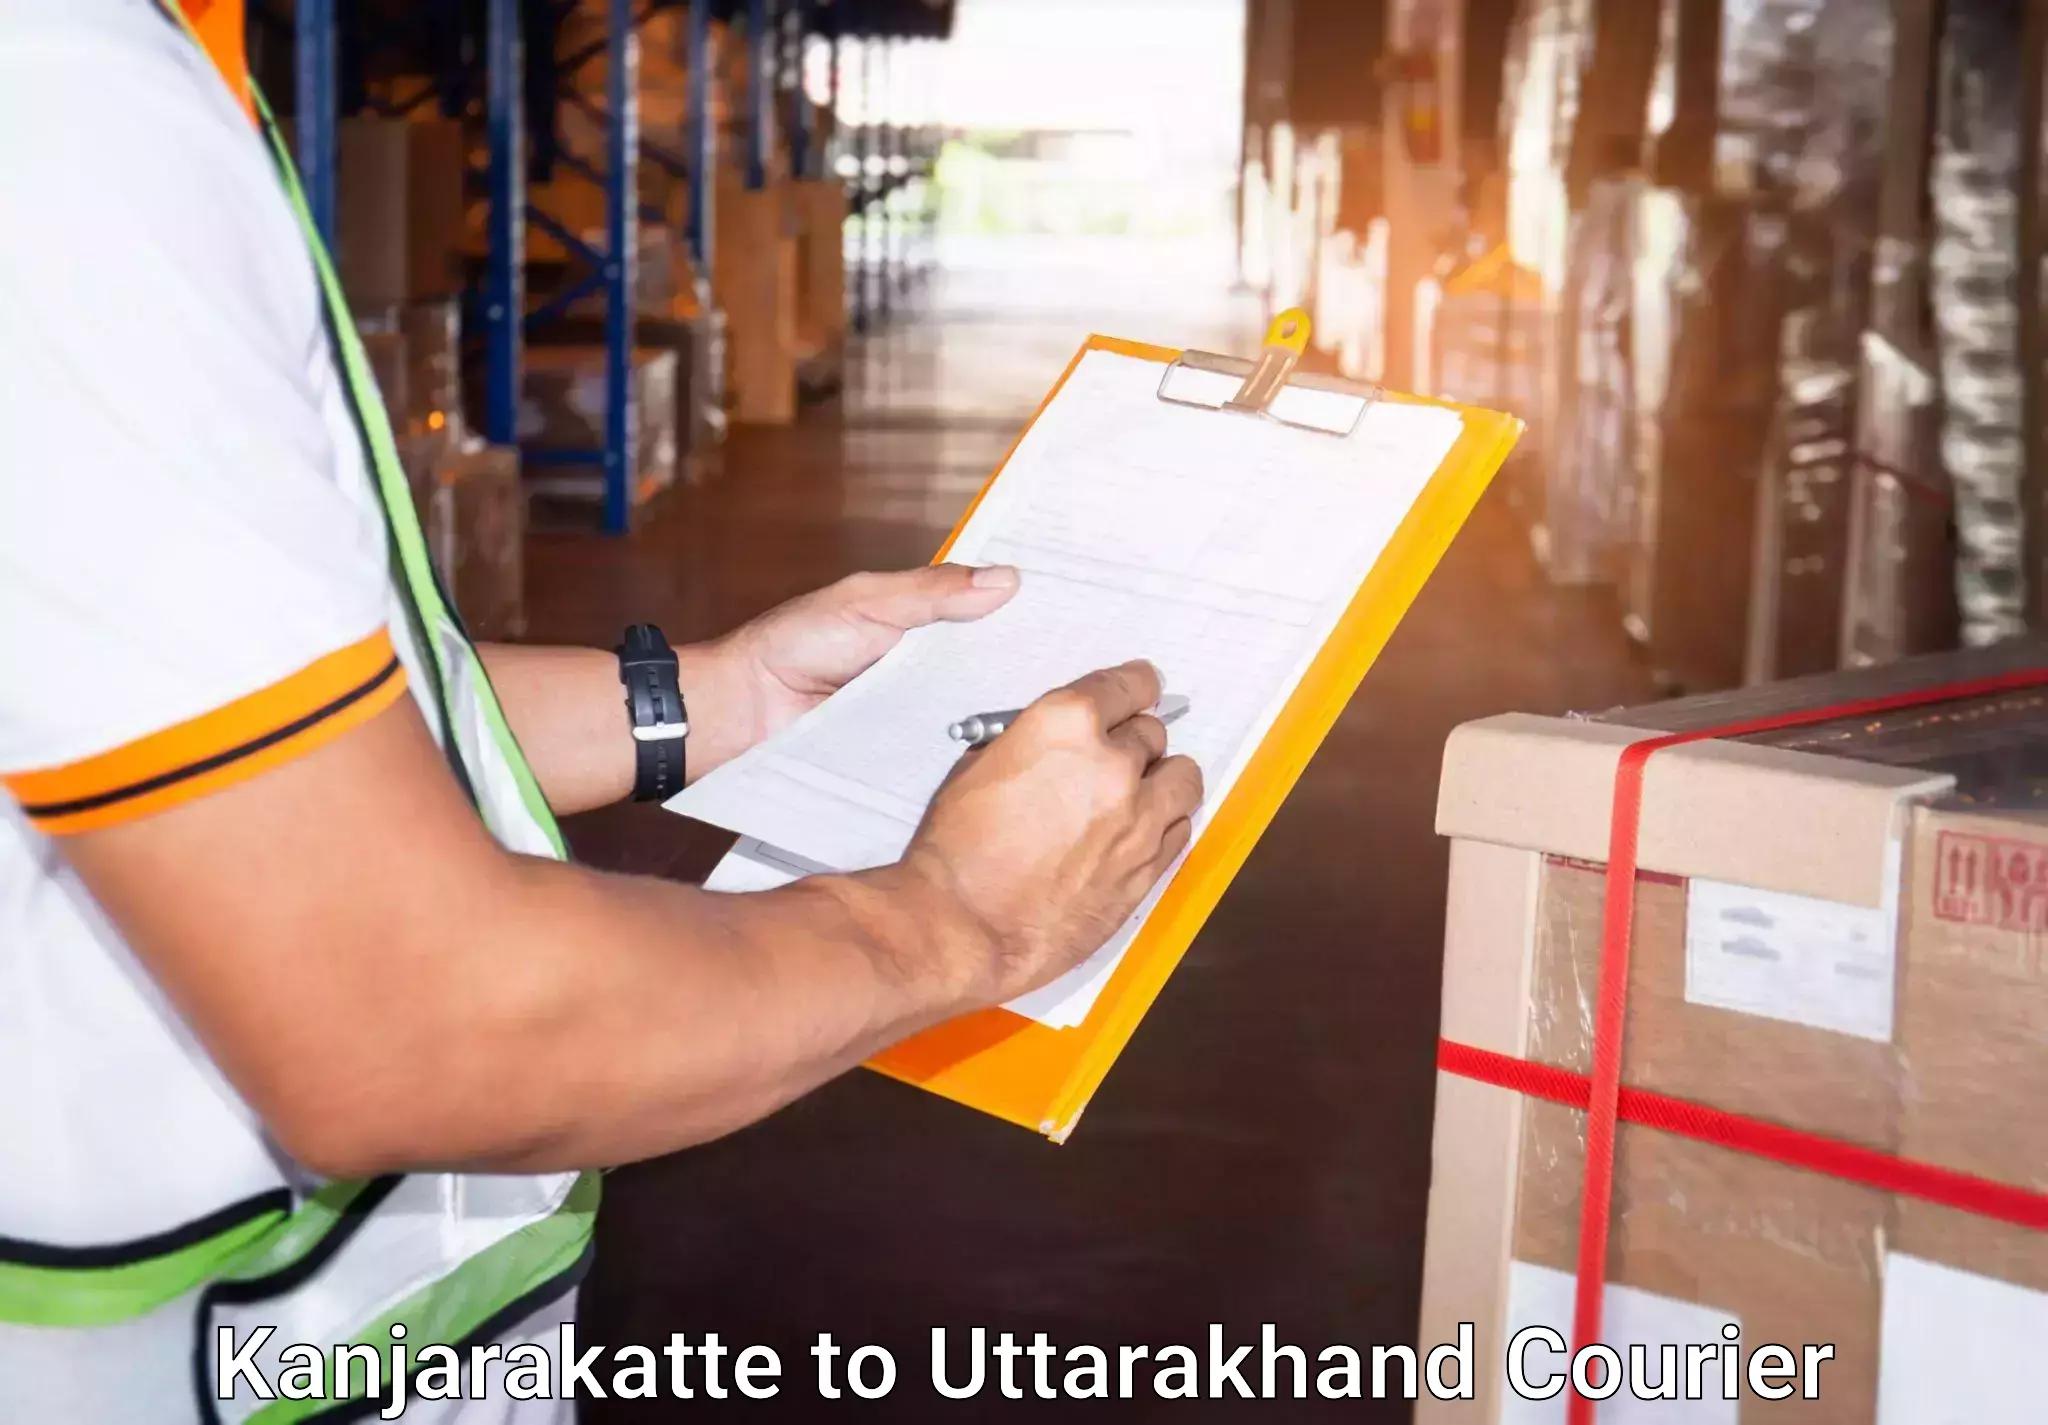 Baggage delivery optimization Kanjarakatte to Rishikesh